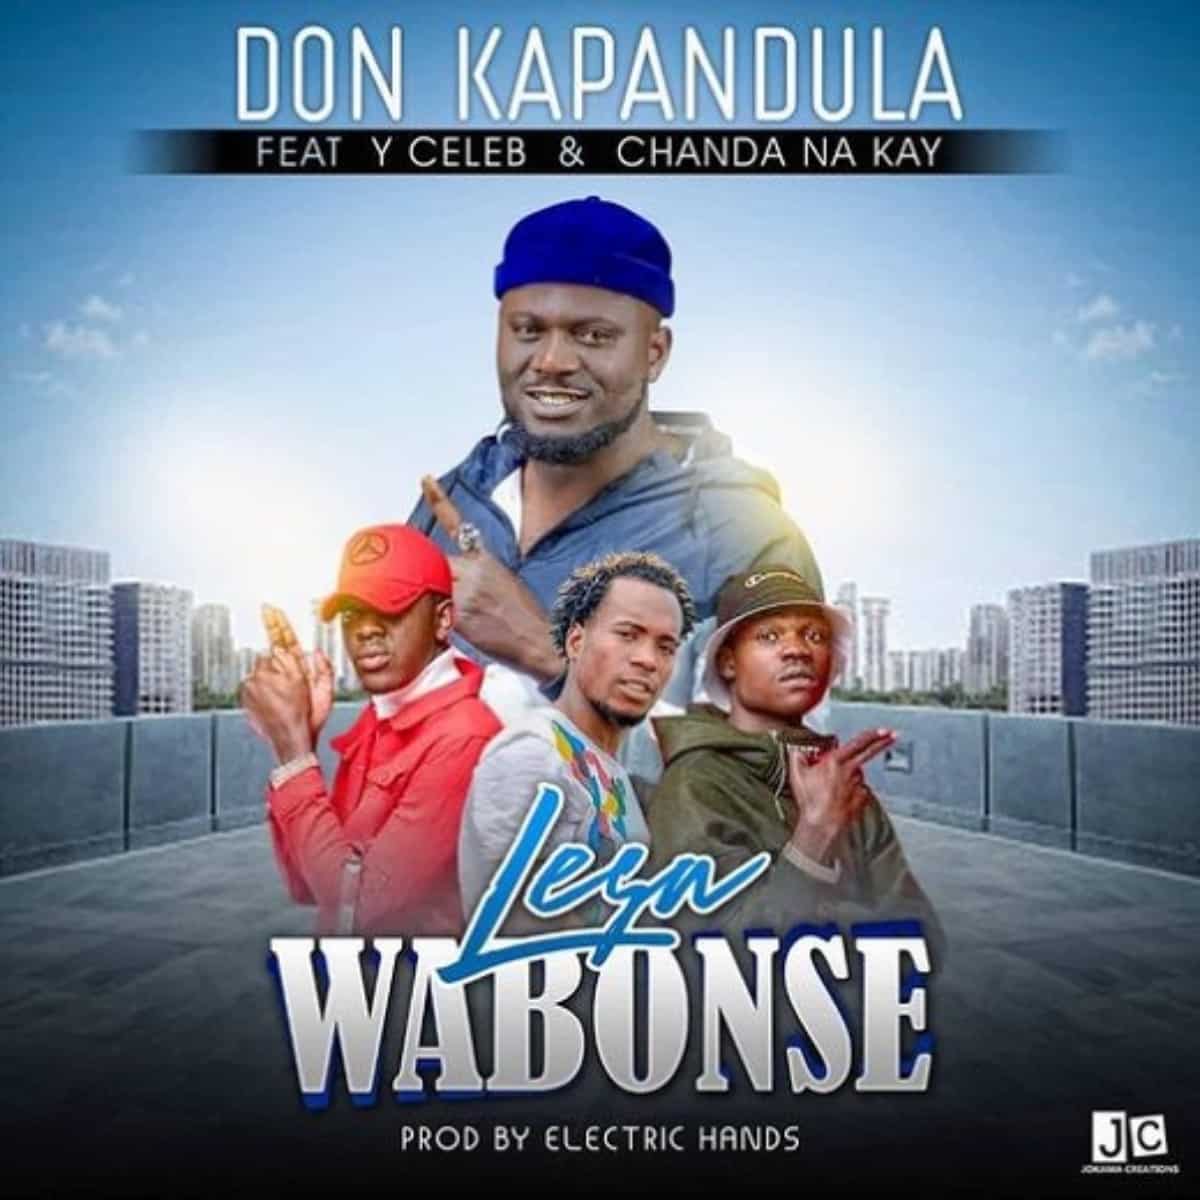 DOWNLOAD: Don Kapandula Ft Chanda Na Kay & Y Celeb – “Lesa Wabonse” Mp3